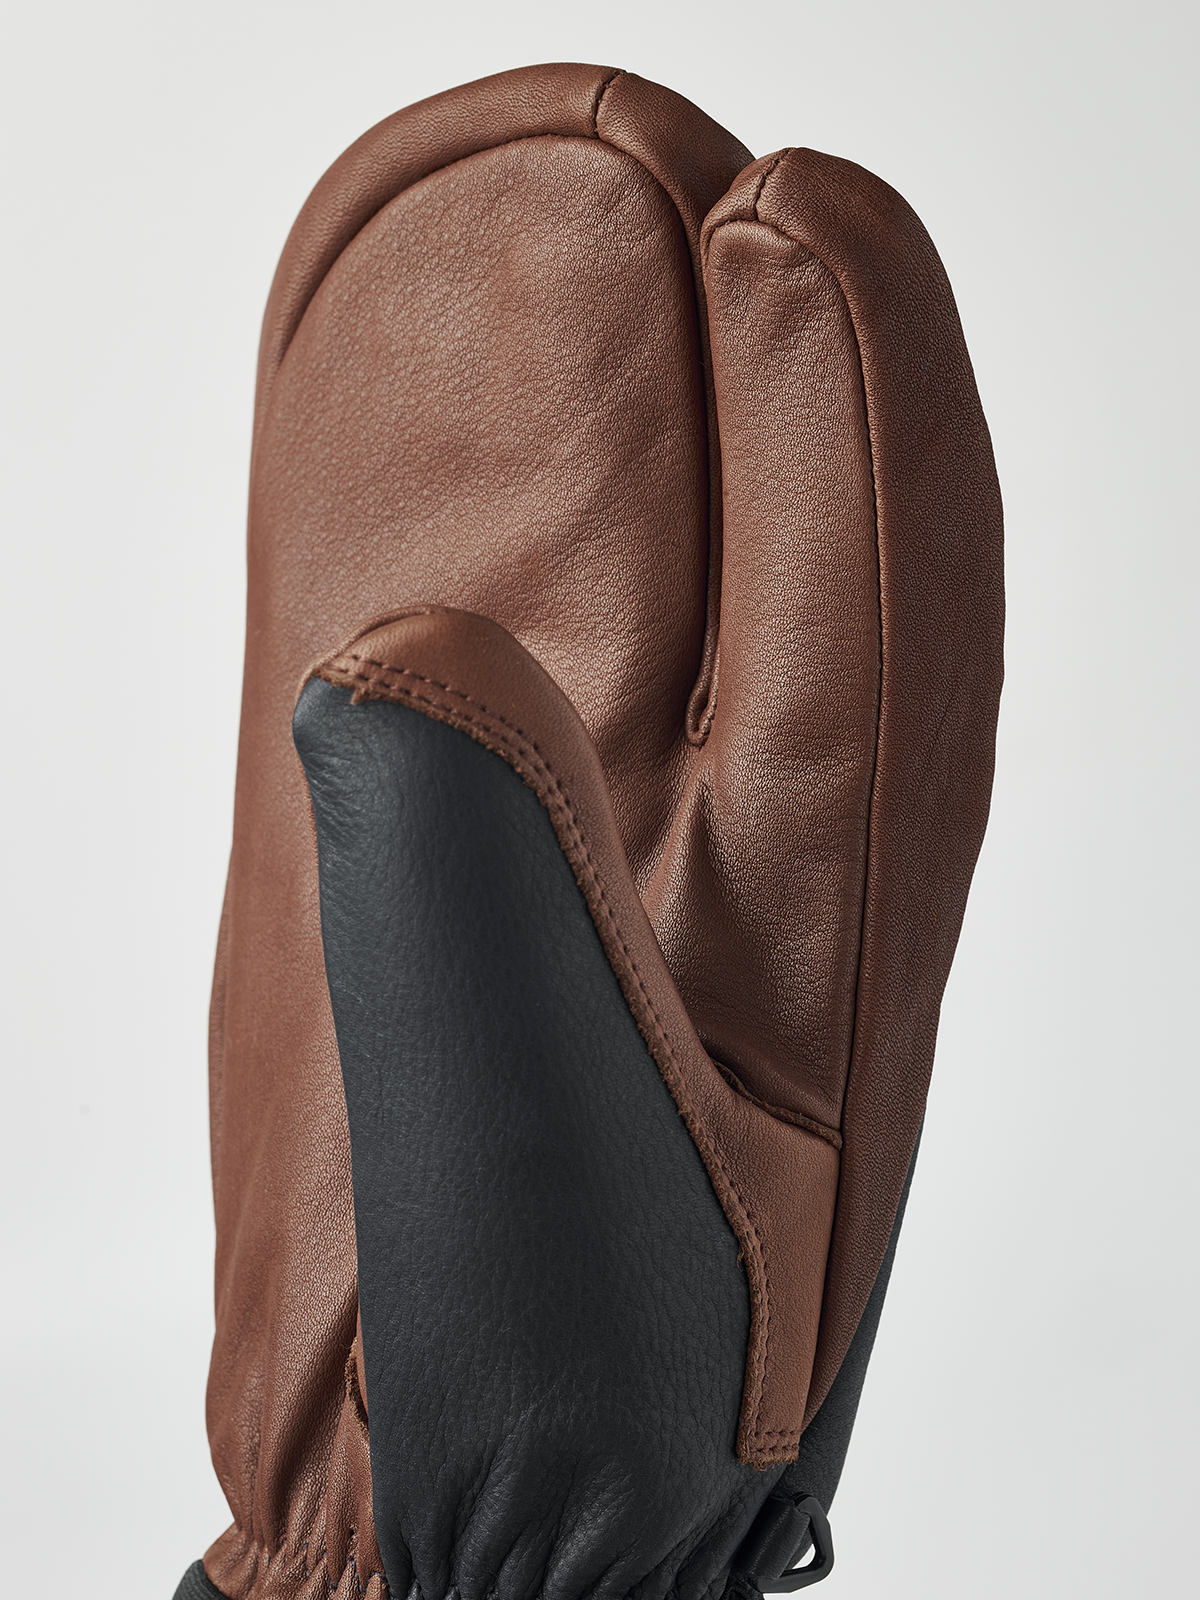 Topo 3-finger - Navy & Brown | Hestra Gloves